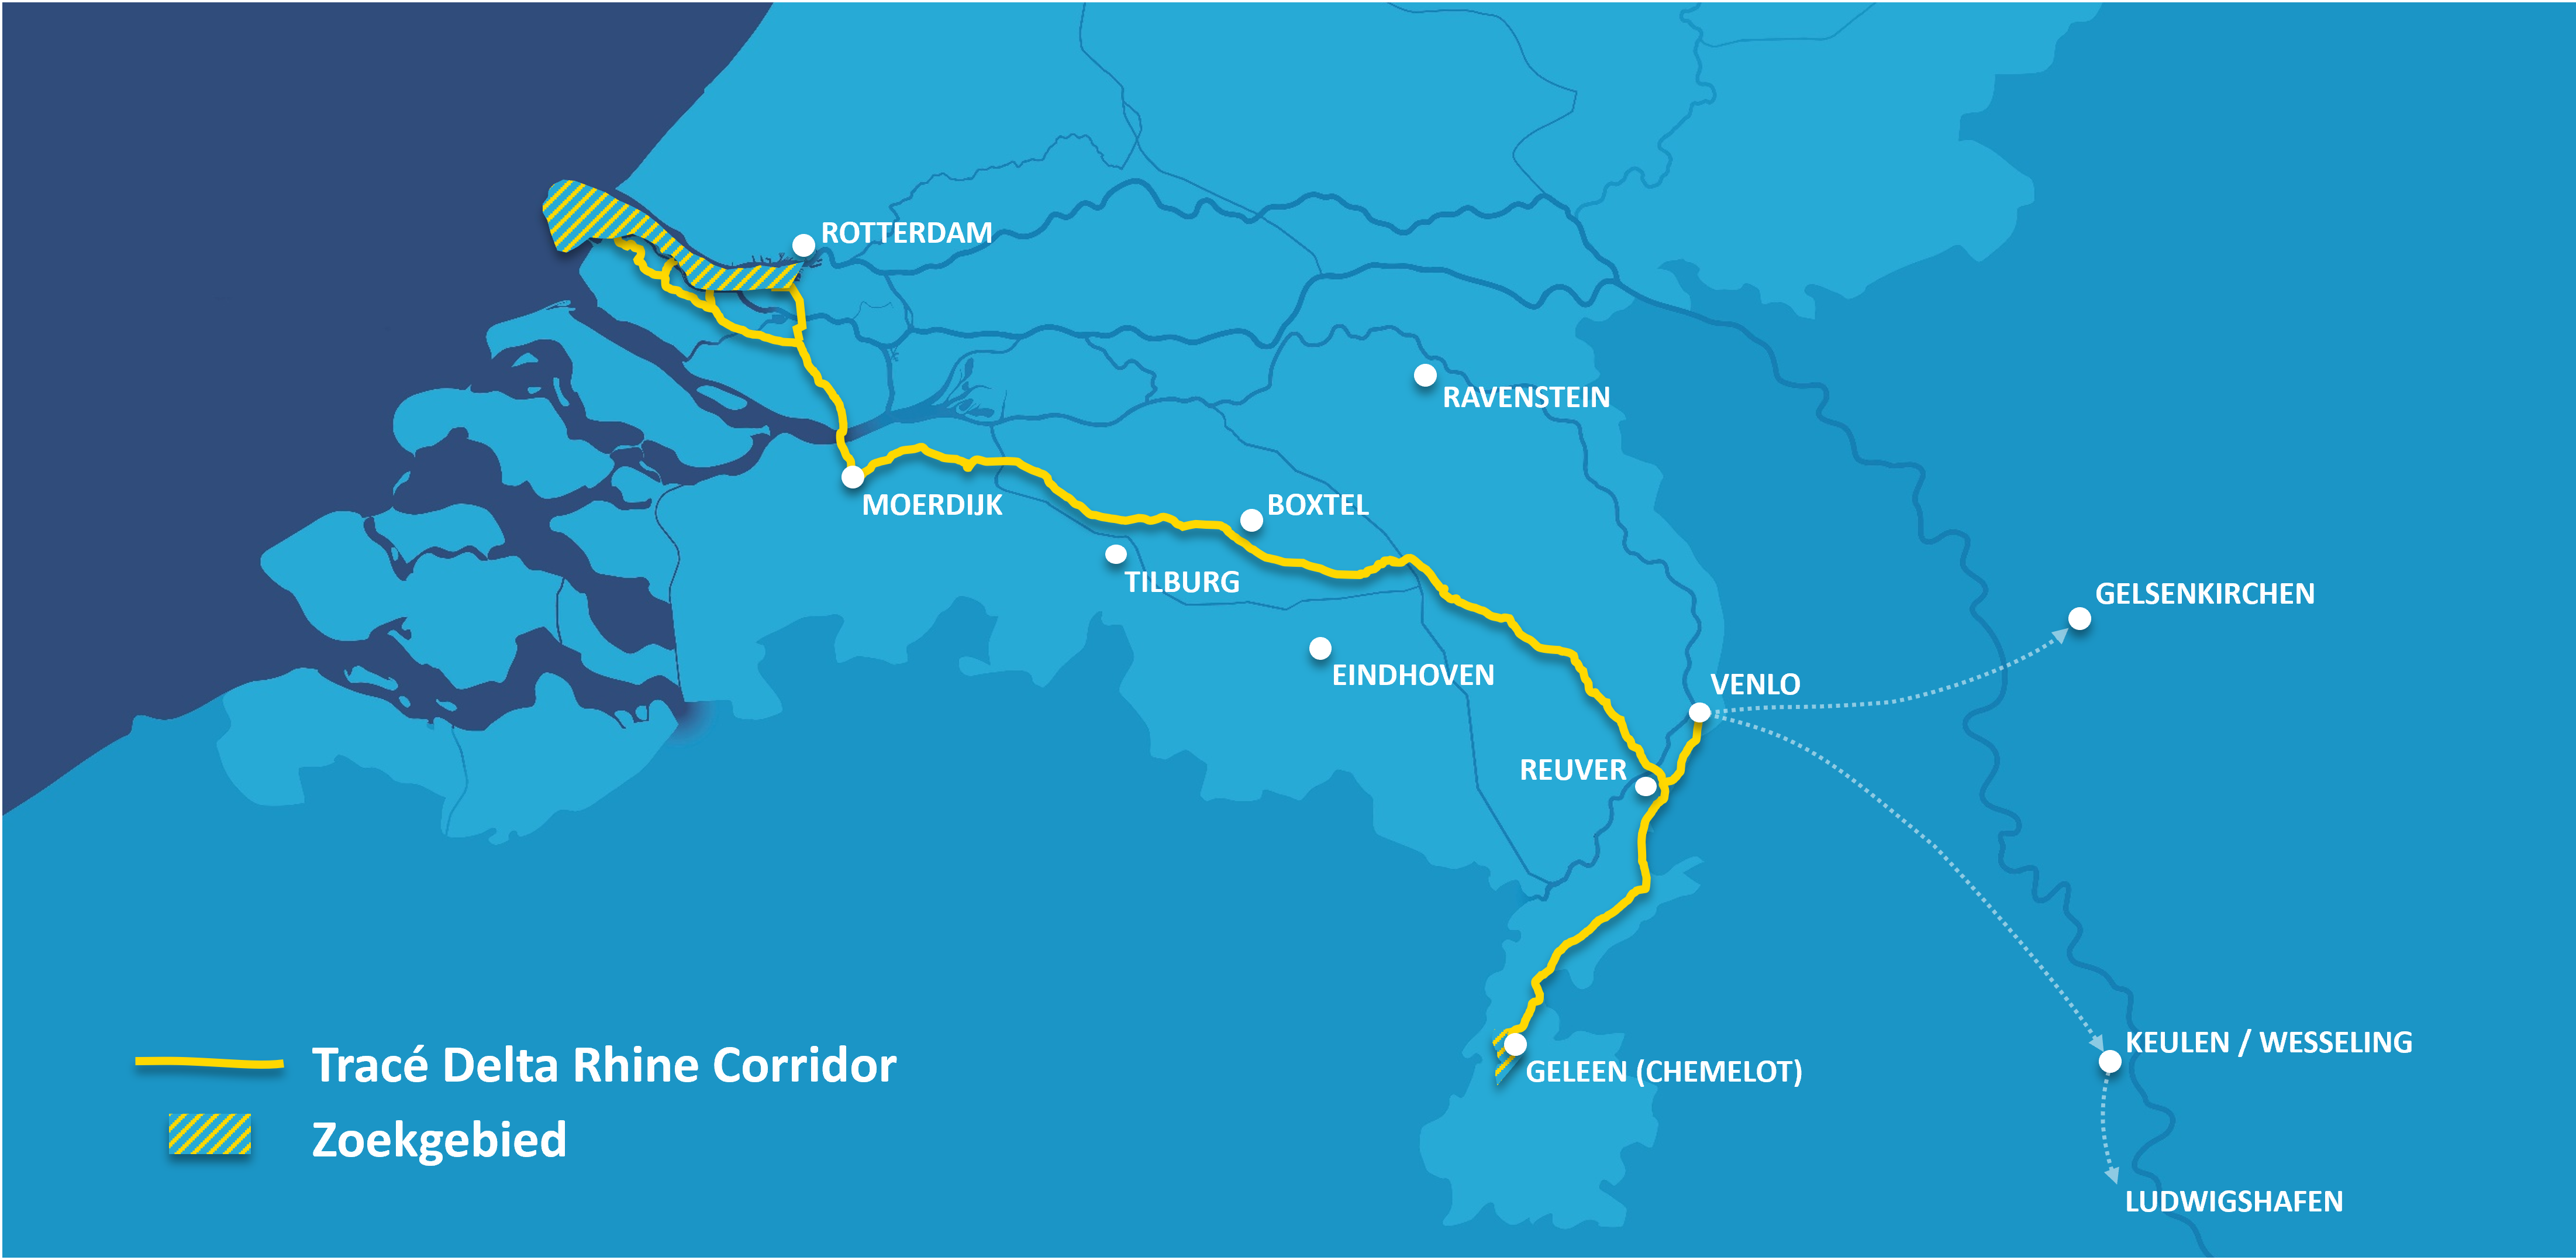 Overzicht kaart waar de Delta Rhine Corridor gaat komen